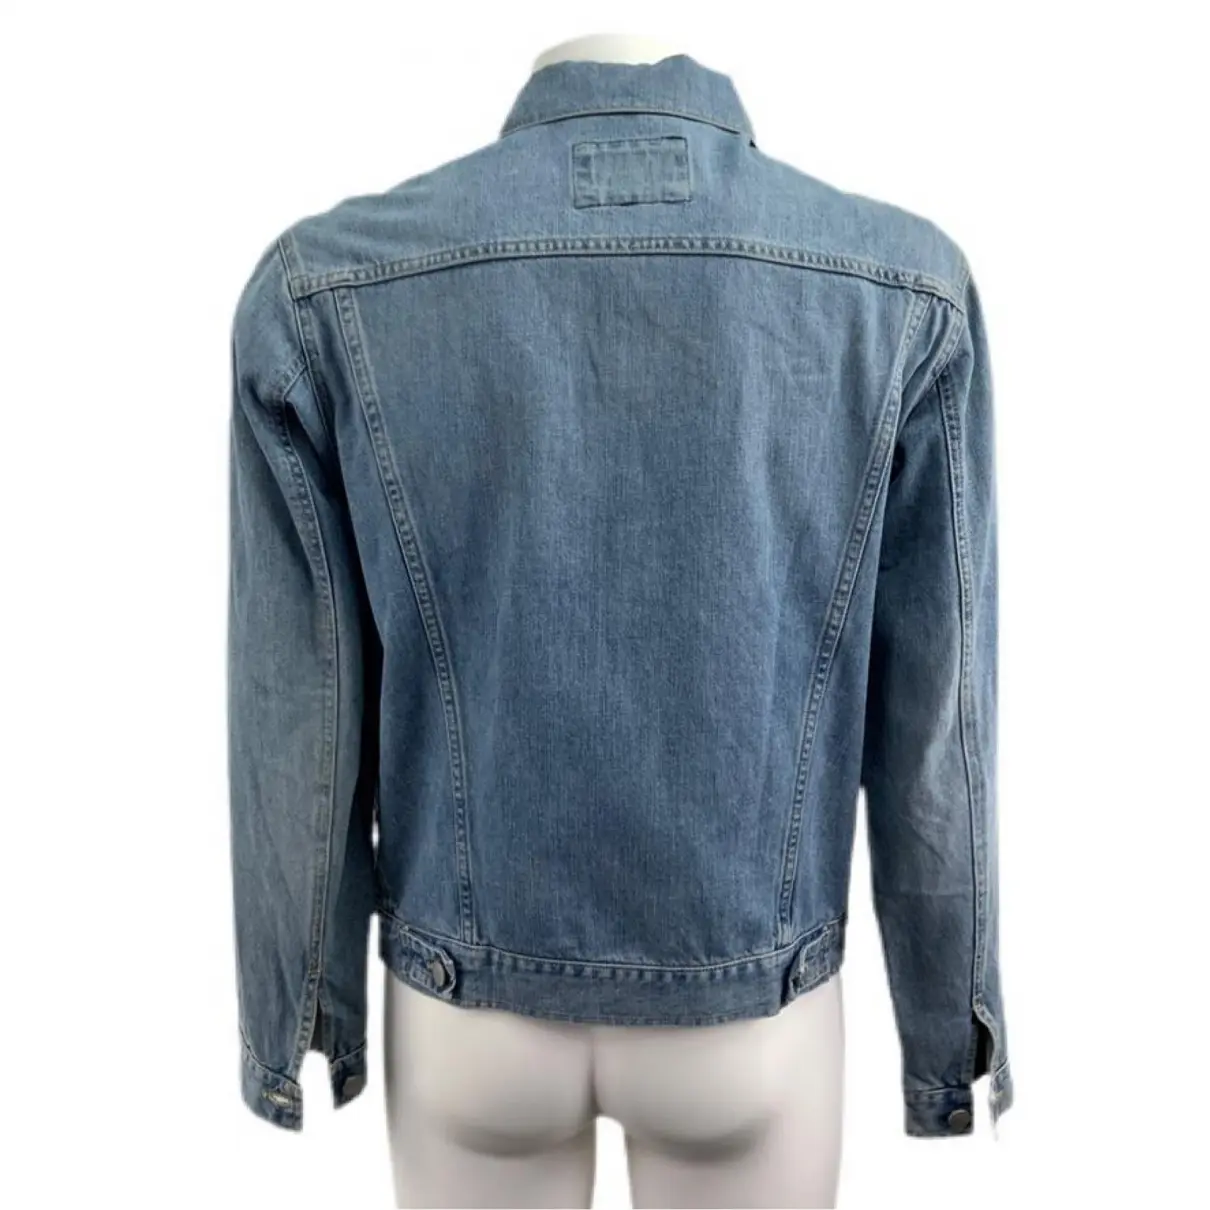 Buy Trussardi Jeans Jacket online